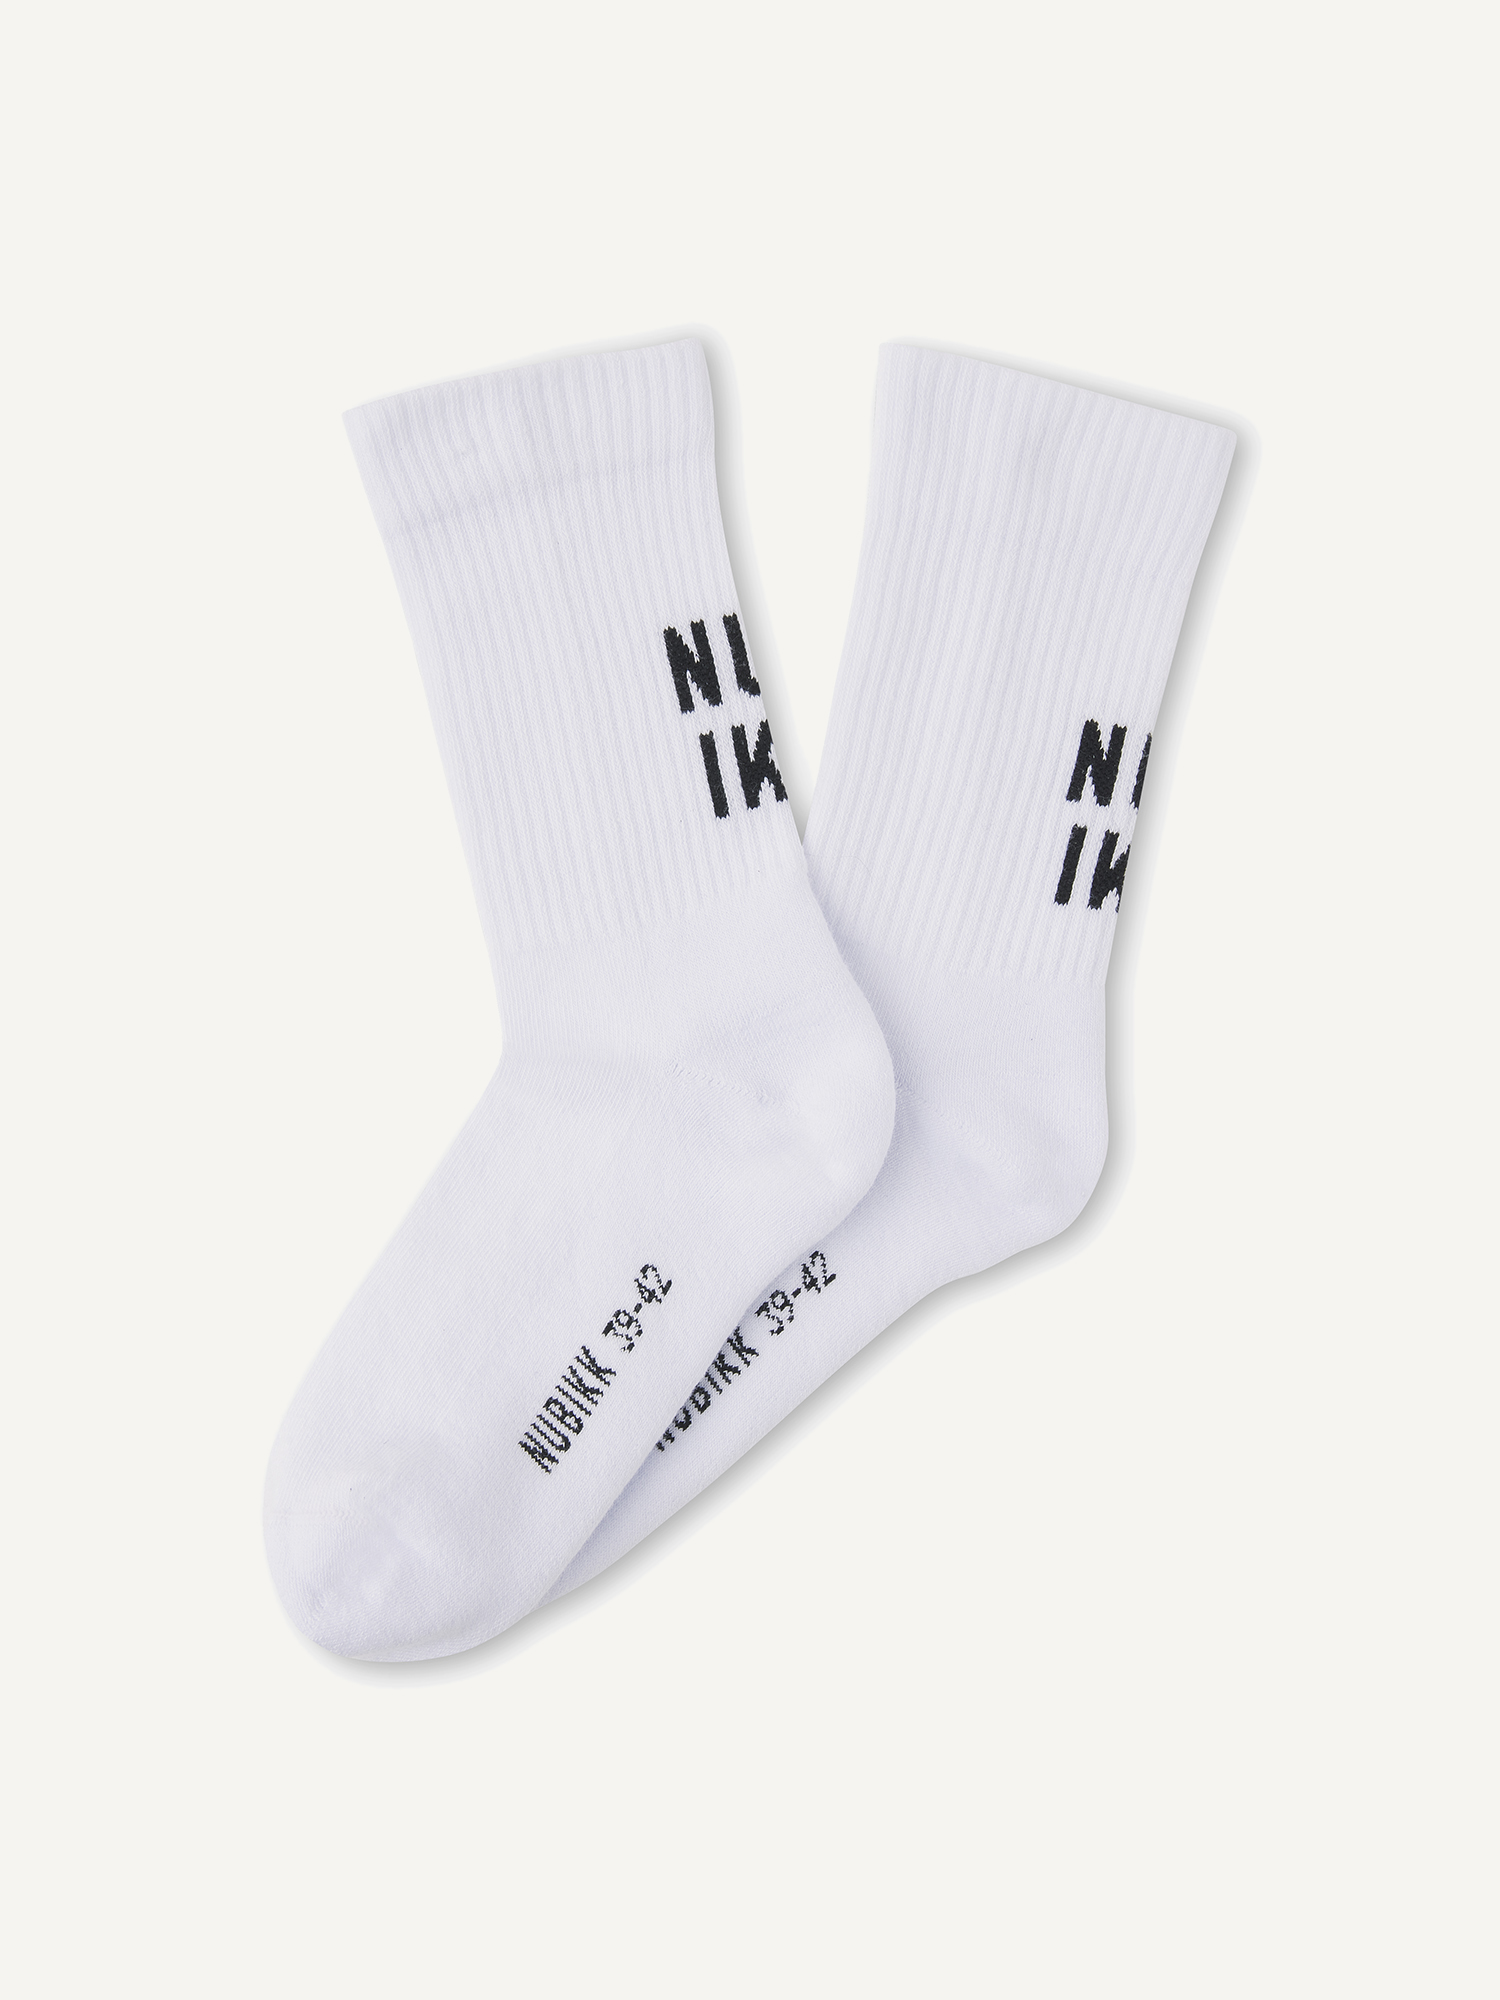 Nova Socks | White socks for men